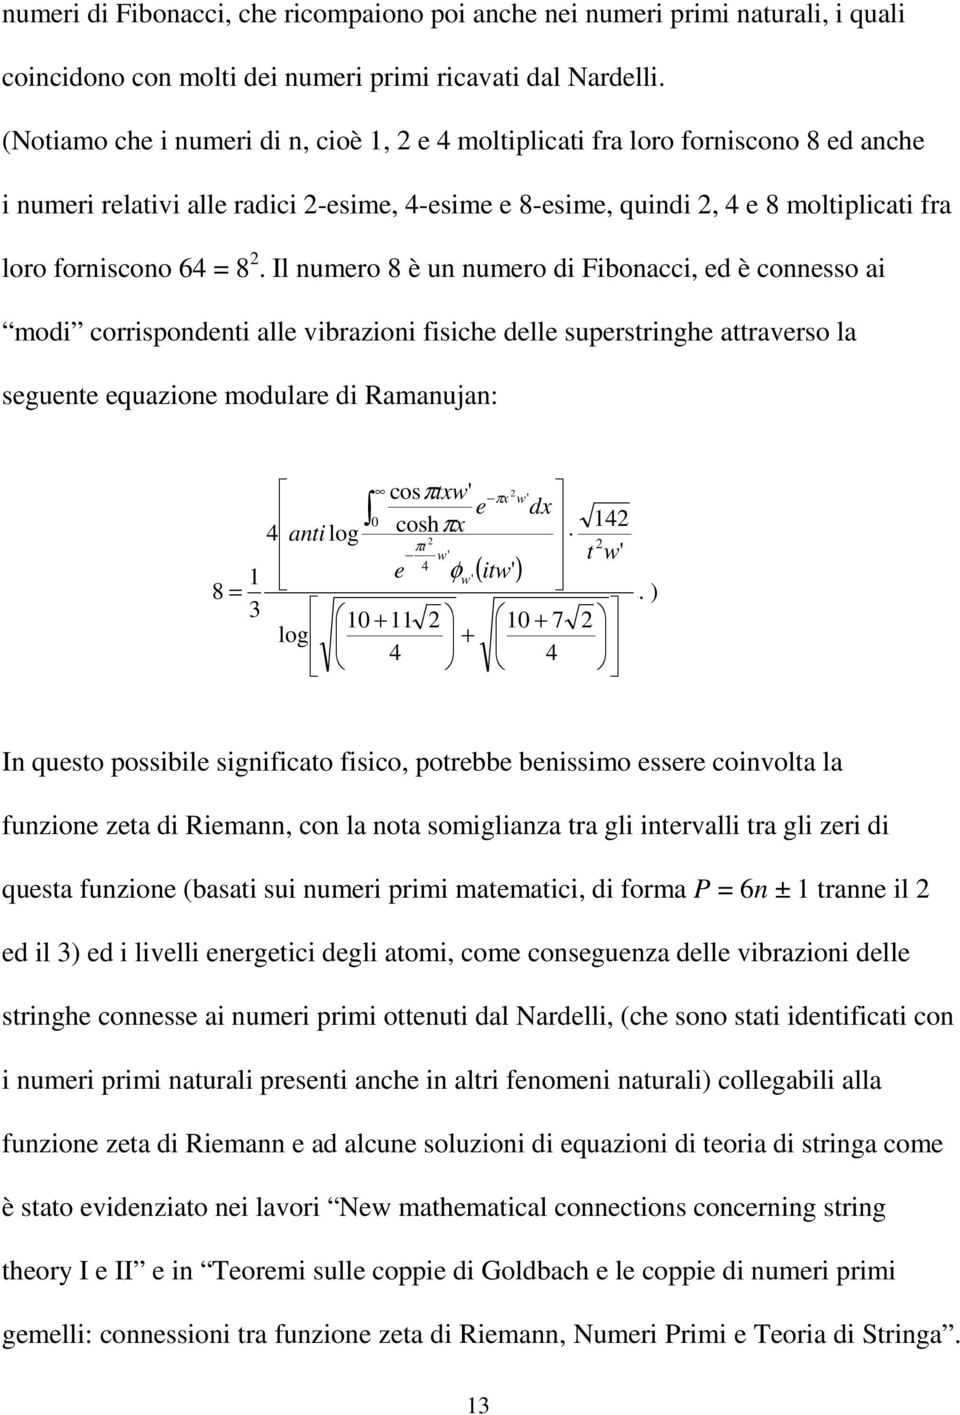 2. Il numero 8 è un numero di Fibonacci, ed è connesso ai modi corrispondenti alle vibrazioni fisiche delle superstringhe attraverso la seguente equazione modulare di Ramanujan: 8 = 1 3 cosπtxw' 2 πx